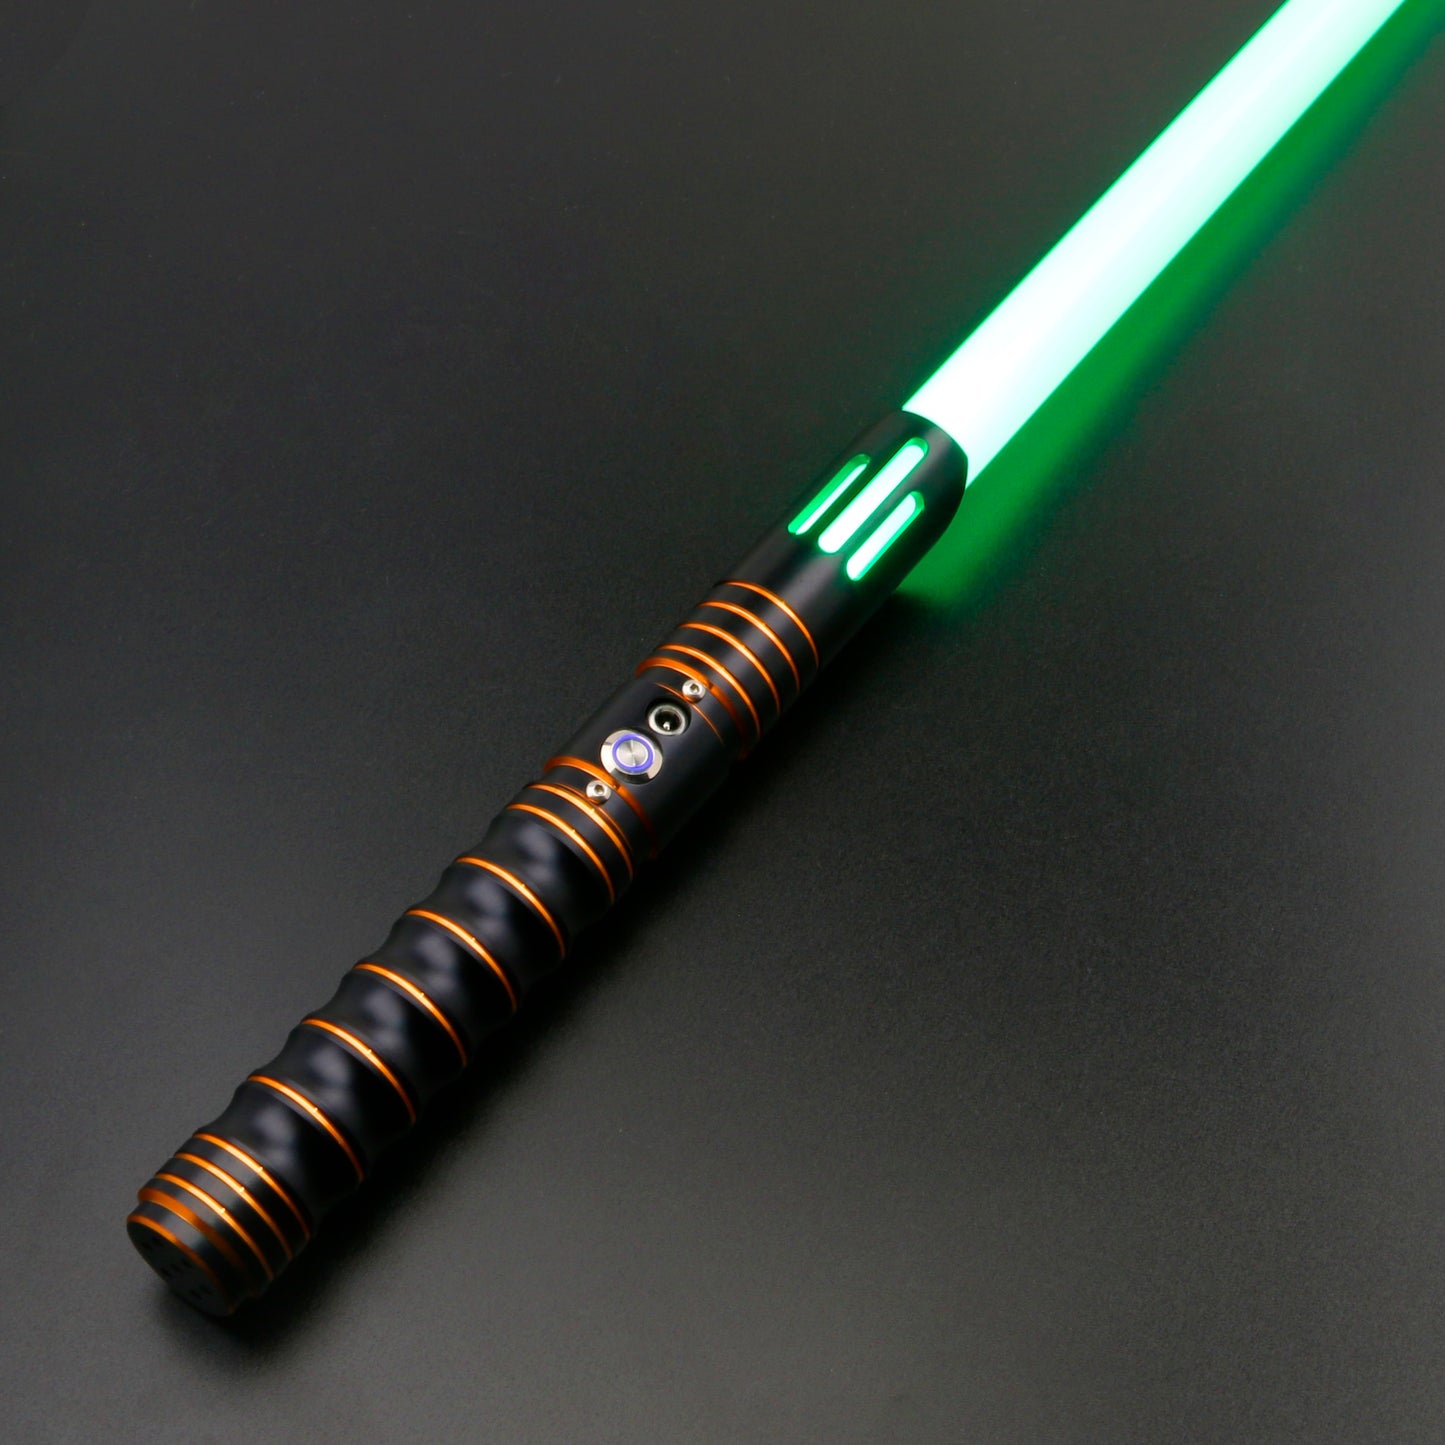 Star Wars Color Changing Lightsaber with Sound Lightsaber | Durable, Aluminum Hilt, Rounded Shaped Emitter, RGB Star Wars laser sword